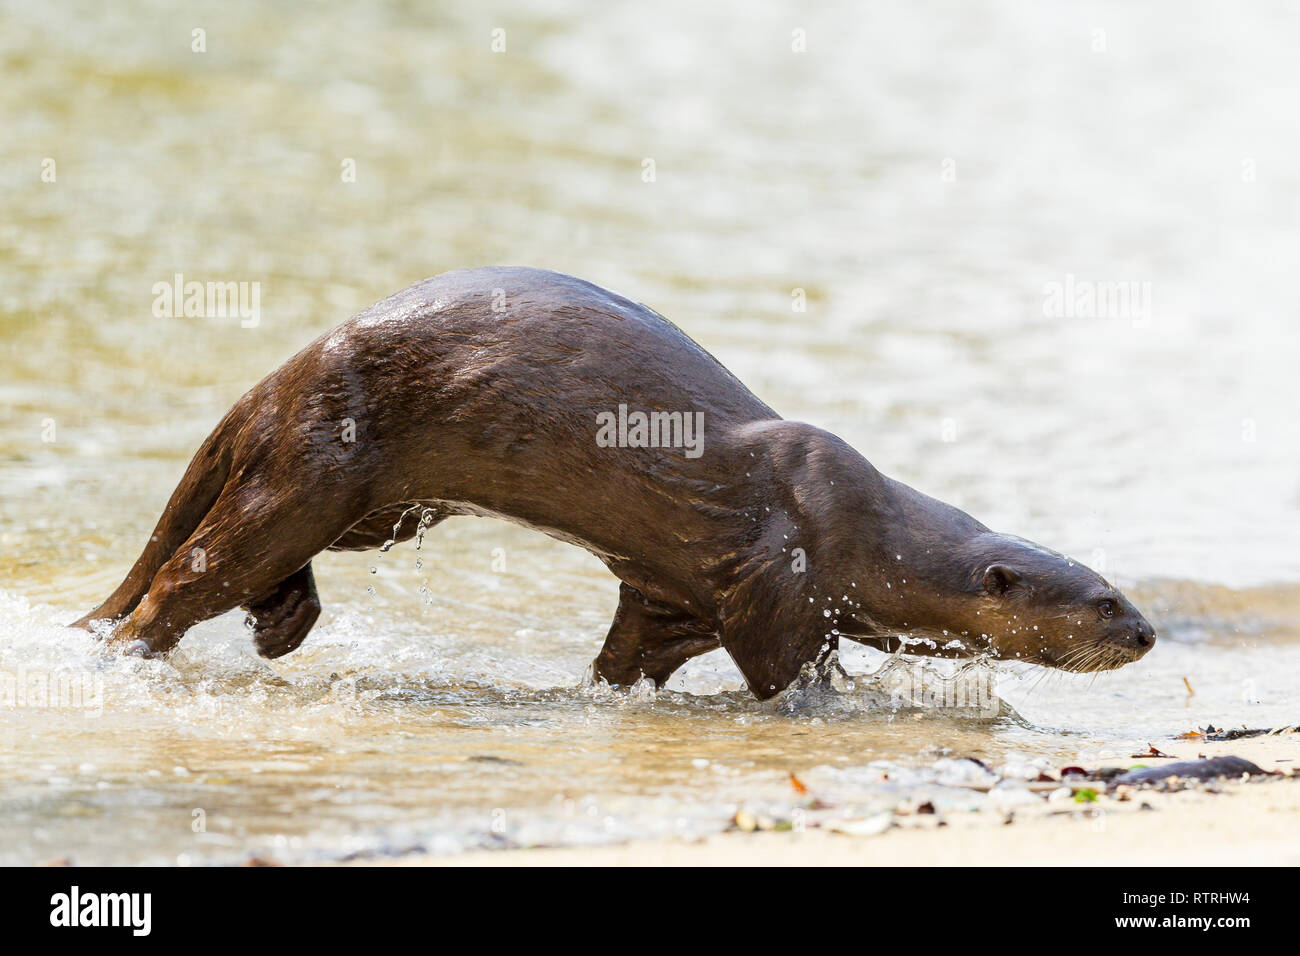 Enduit lisse otter fonctionnant à terre après la chasse de poissons dans la mer Banque D'Images